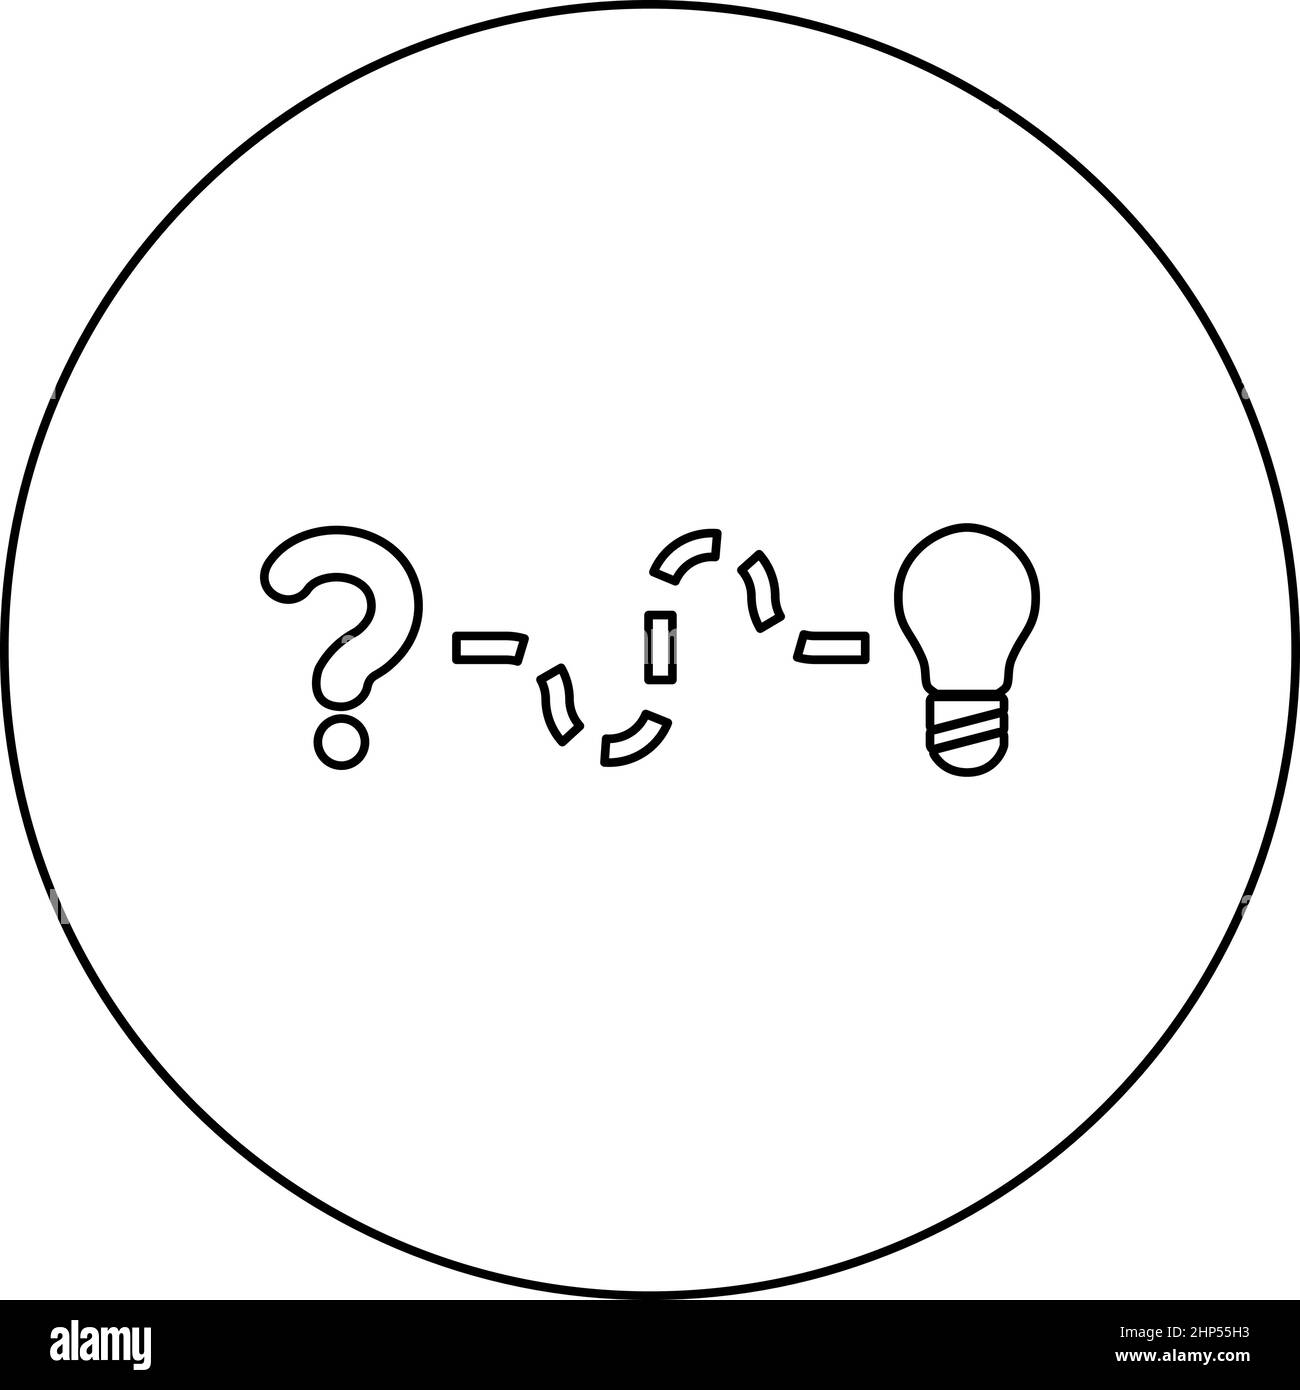 Konzept der Suche nach Lösung für das Problem Frage und Weg zur Glühbirne Suche nach Innovation Symbol im Kreis Runde schwarze Farbe Vektor Illustration Solid Umriss Stil Bild Stock Vektor